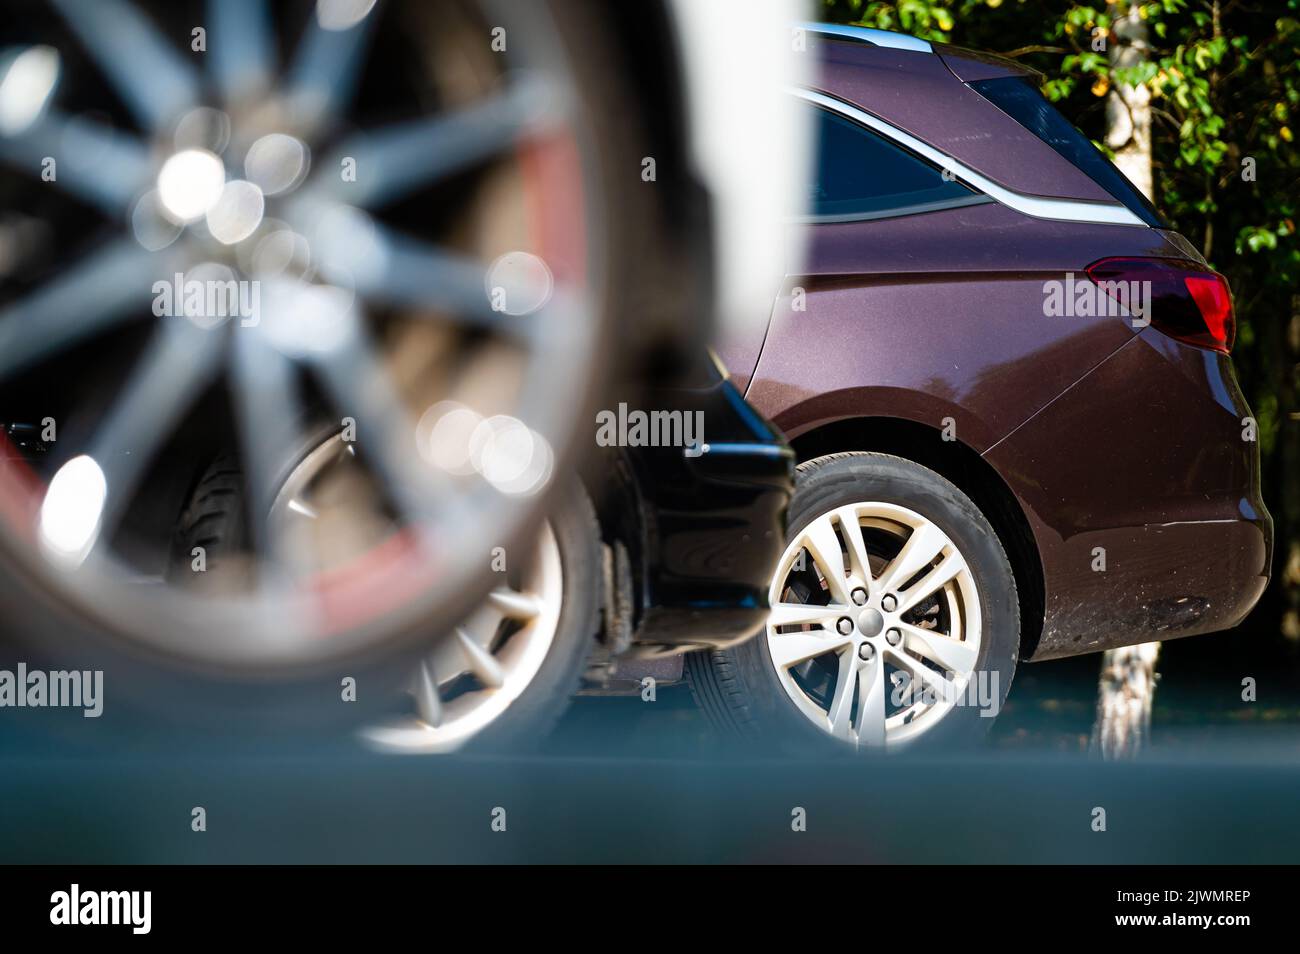 primer plano de las ruedas y parachoques de un coche aparcado en el patio de una casa residencial, sección inferior Foto de stock